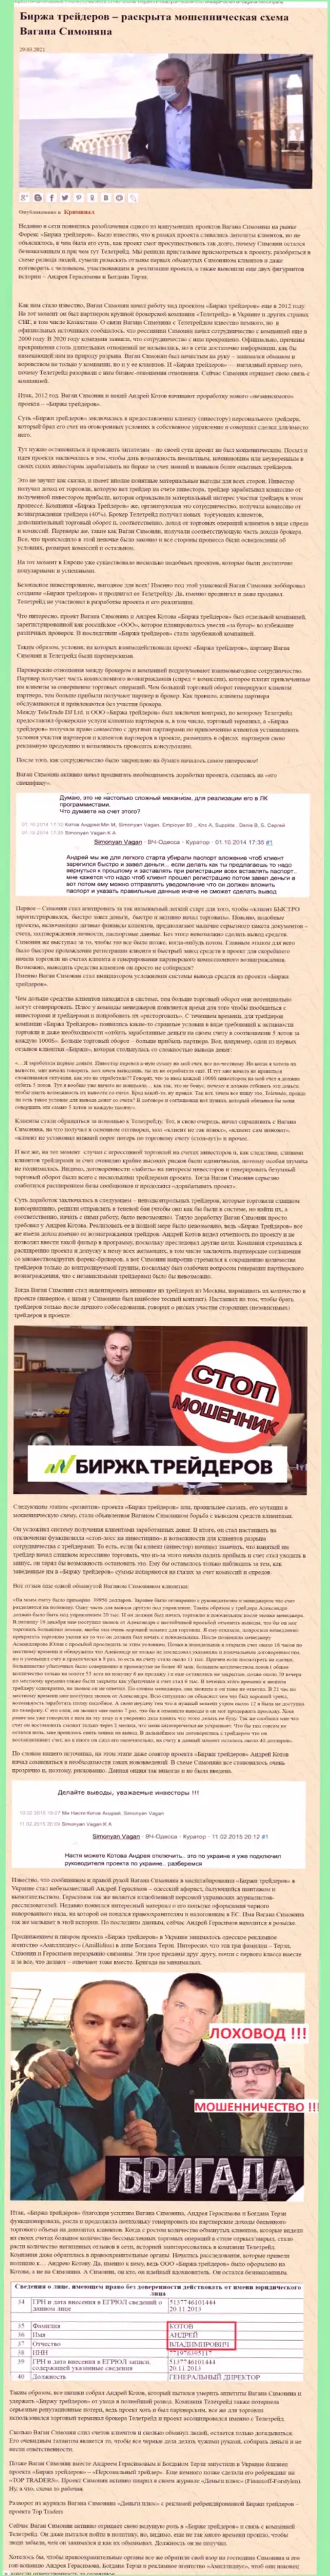 Рекламой конторы B-Traders Ru, тесно связанной с ворюгами ТелеТрейд, тоже был занят Богдан Терзи